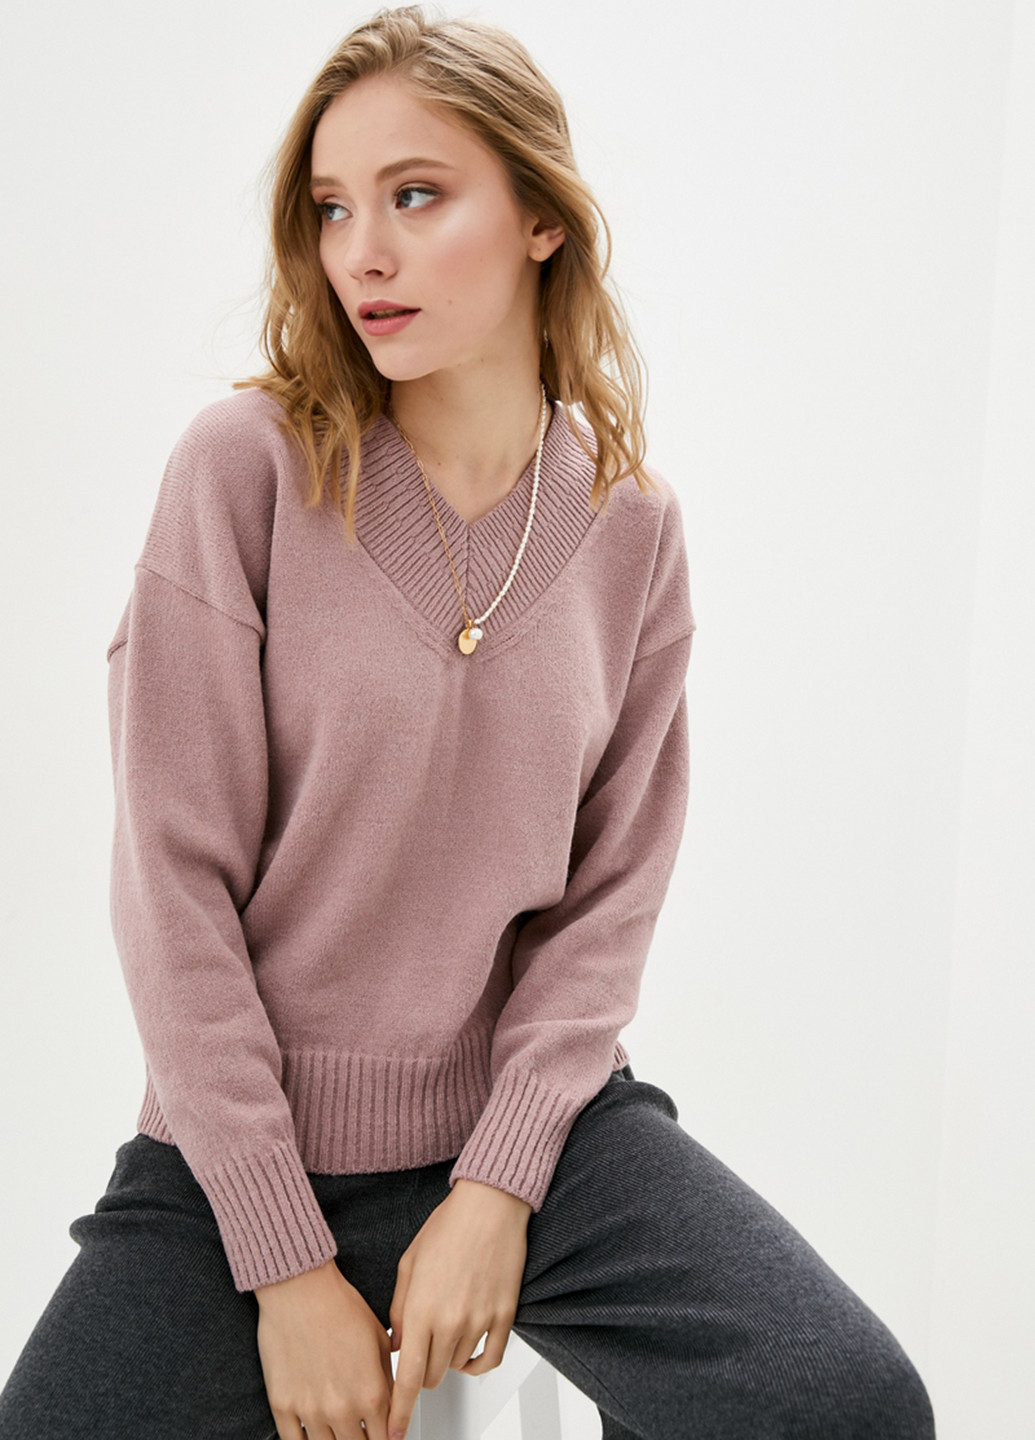 Пудровый демисезонный пуловер пуловер Sewel